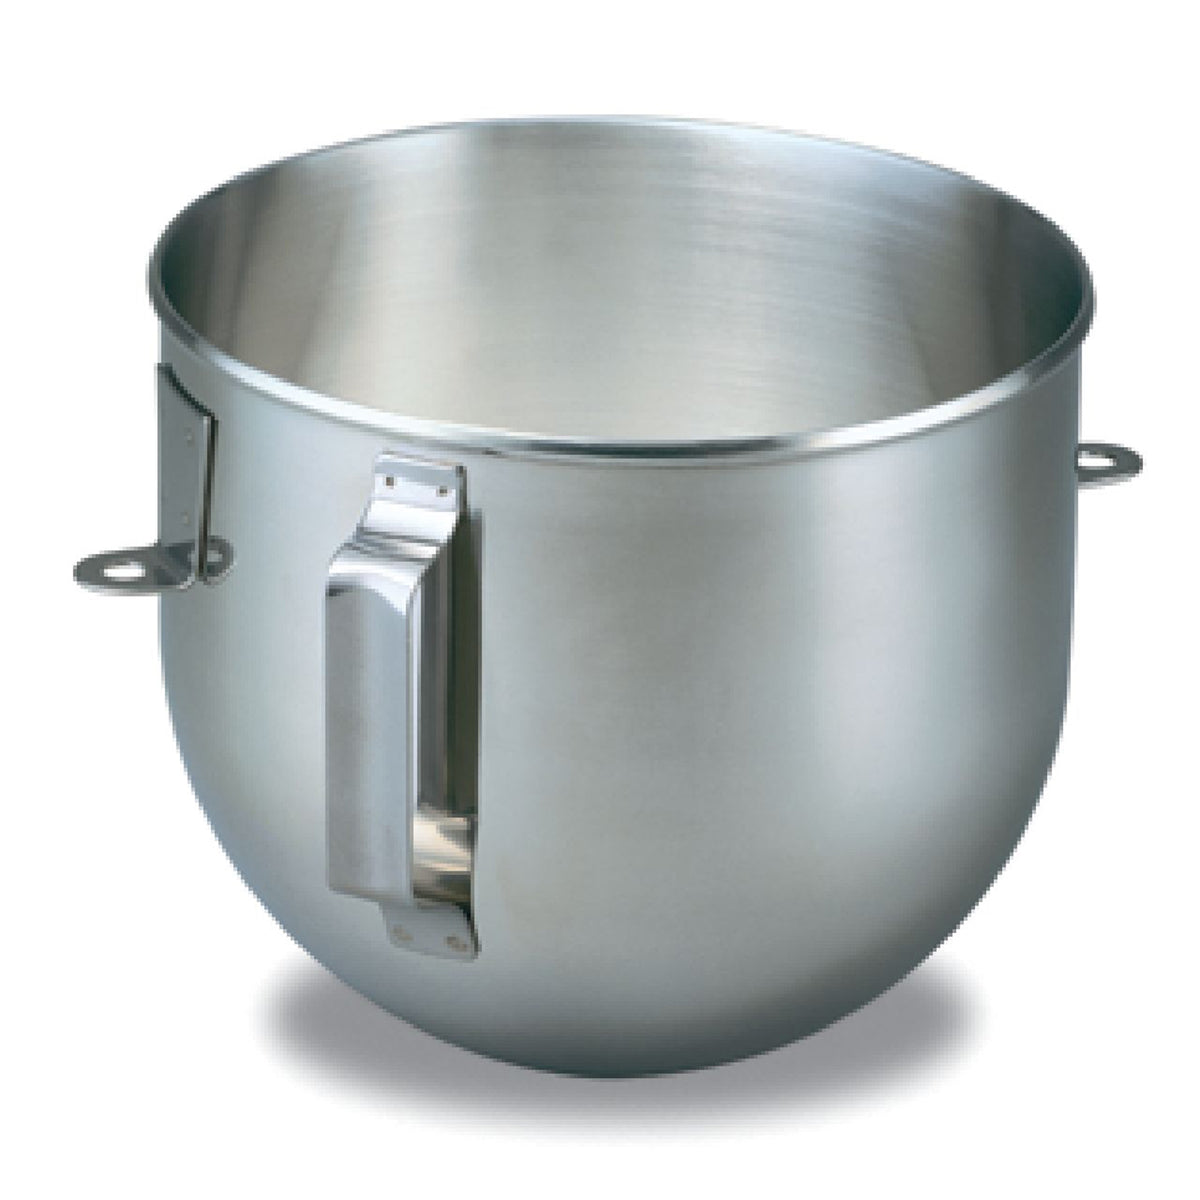 Kitchenaid 5kpm50egr heavy duty lift bowl mixer (grey)